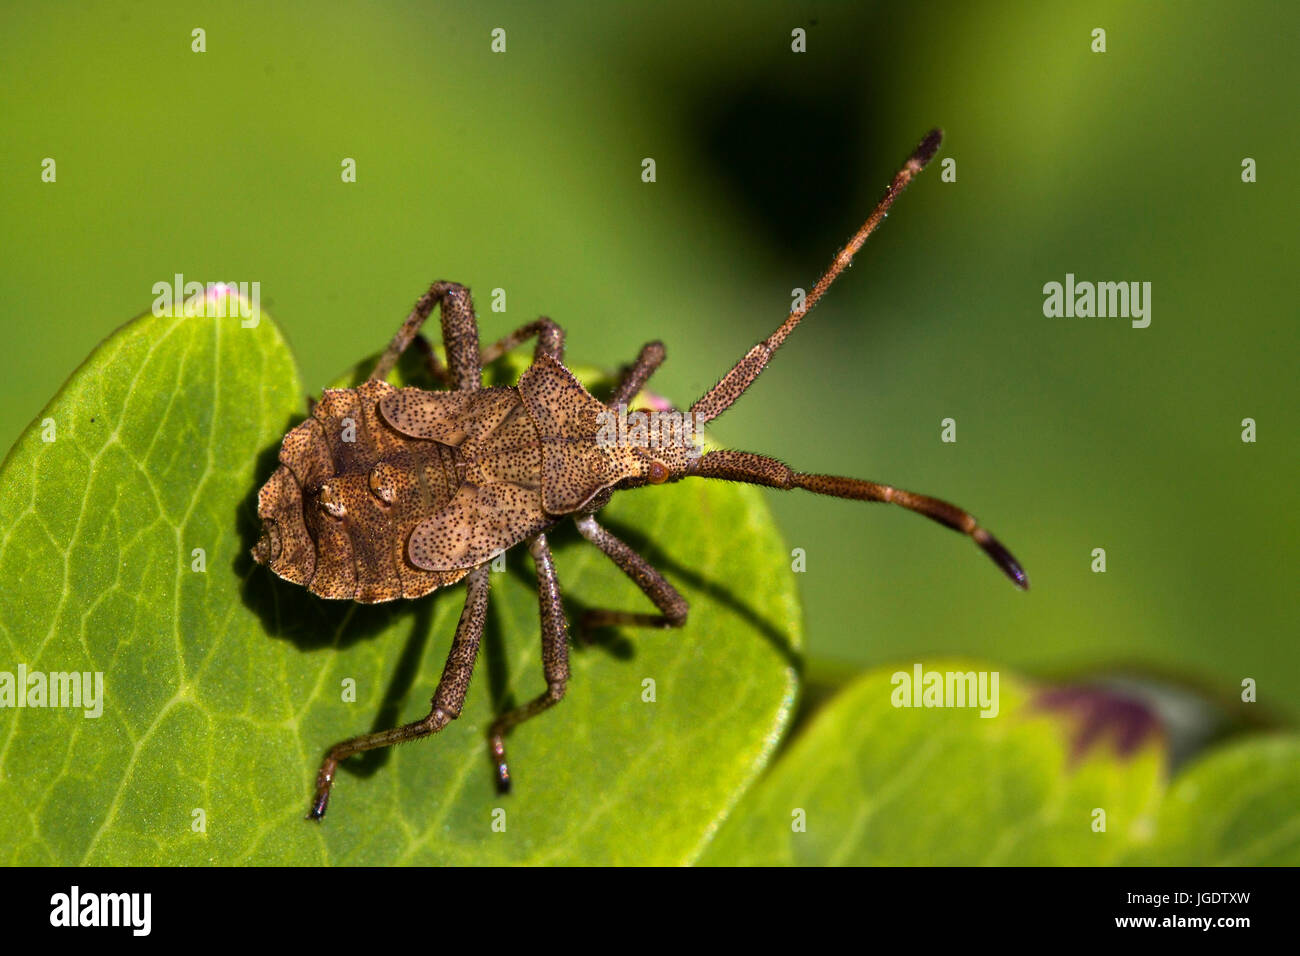 Squash bug, Coreus marginatus, Lederwanze (Coreus marginatus) Stock Photo